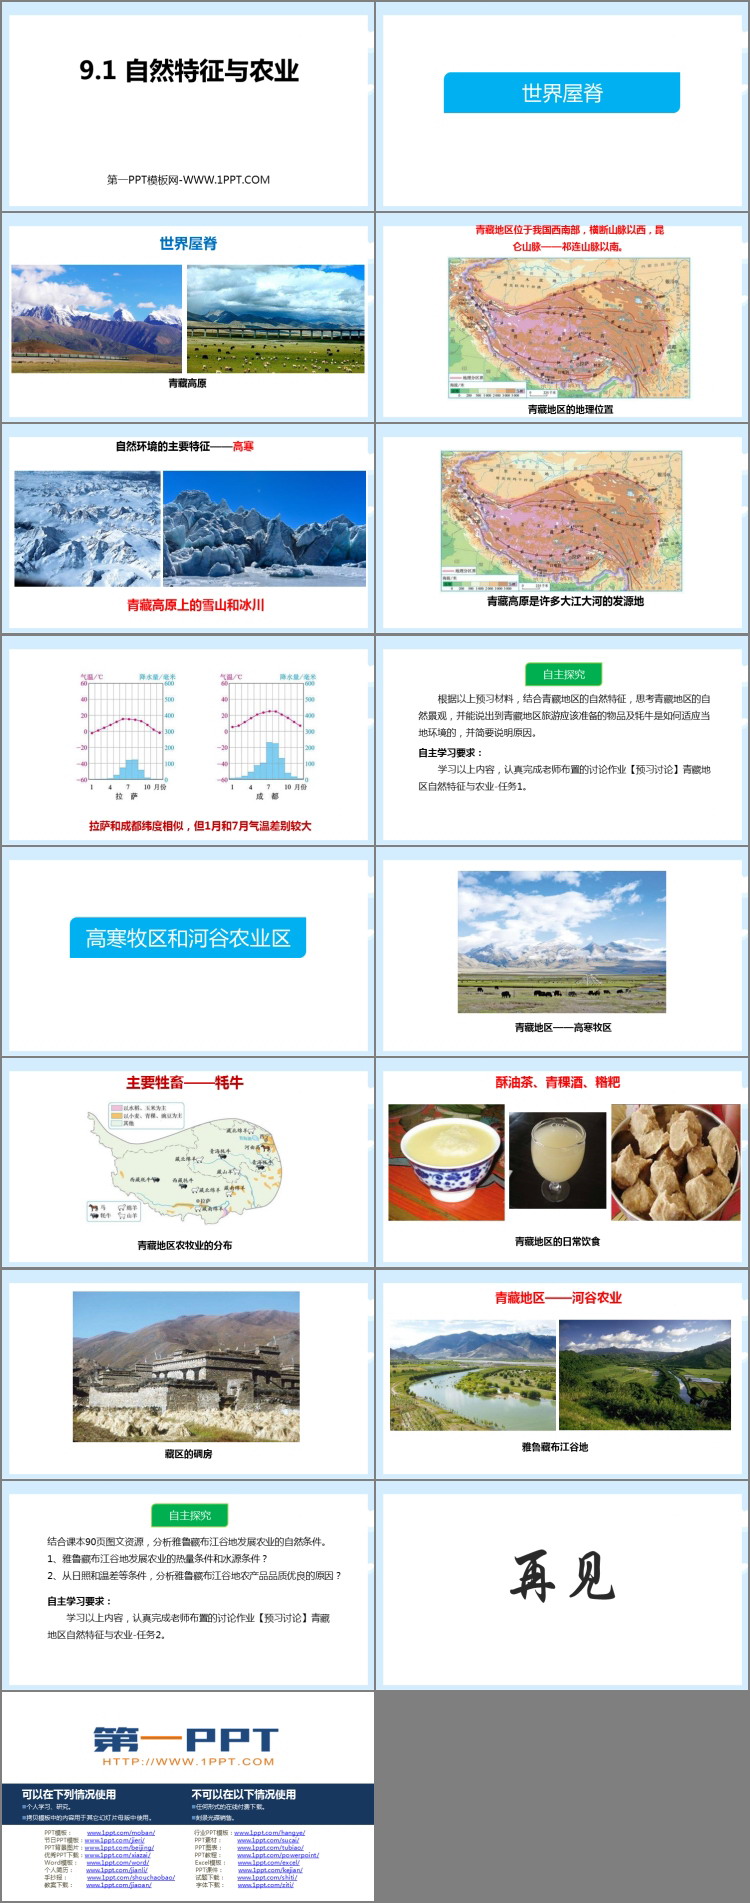 《自然特征与农业》青藏地区PPT教学课件-预览图02